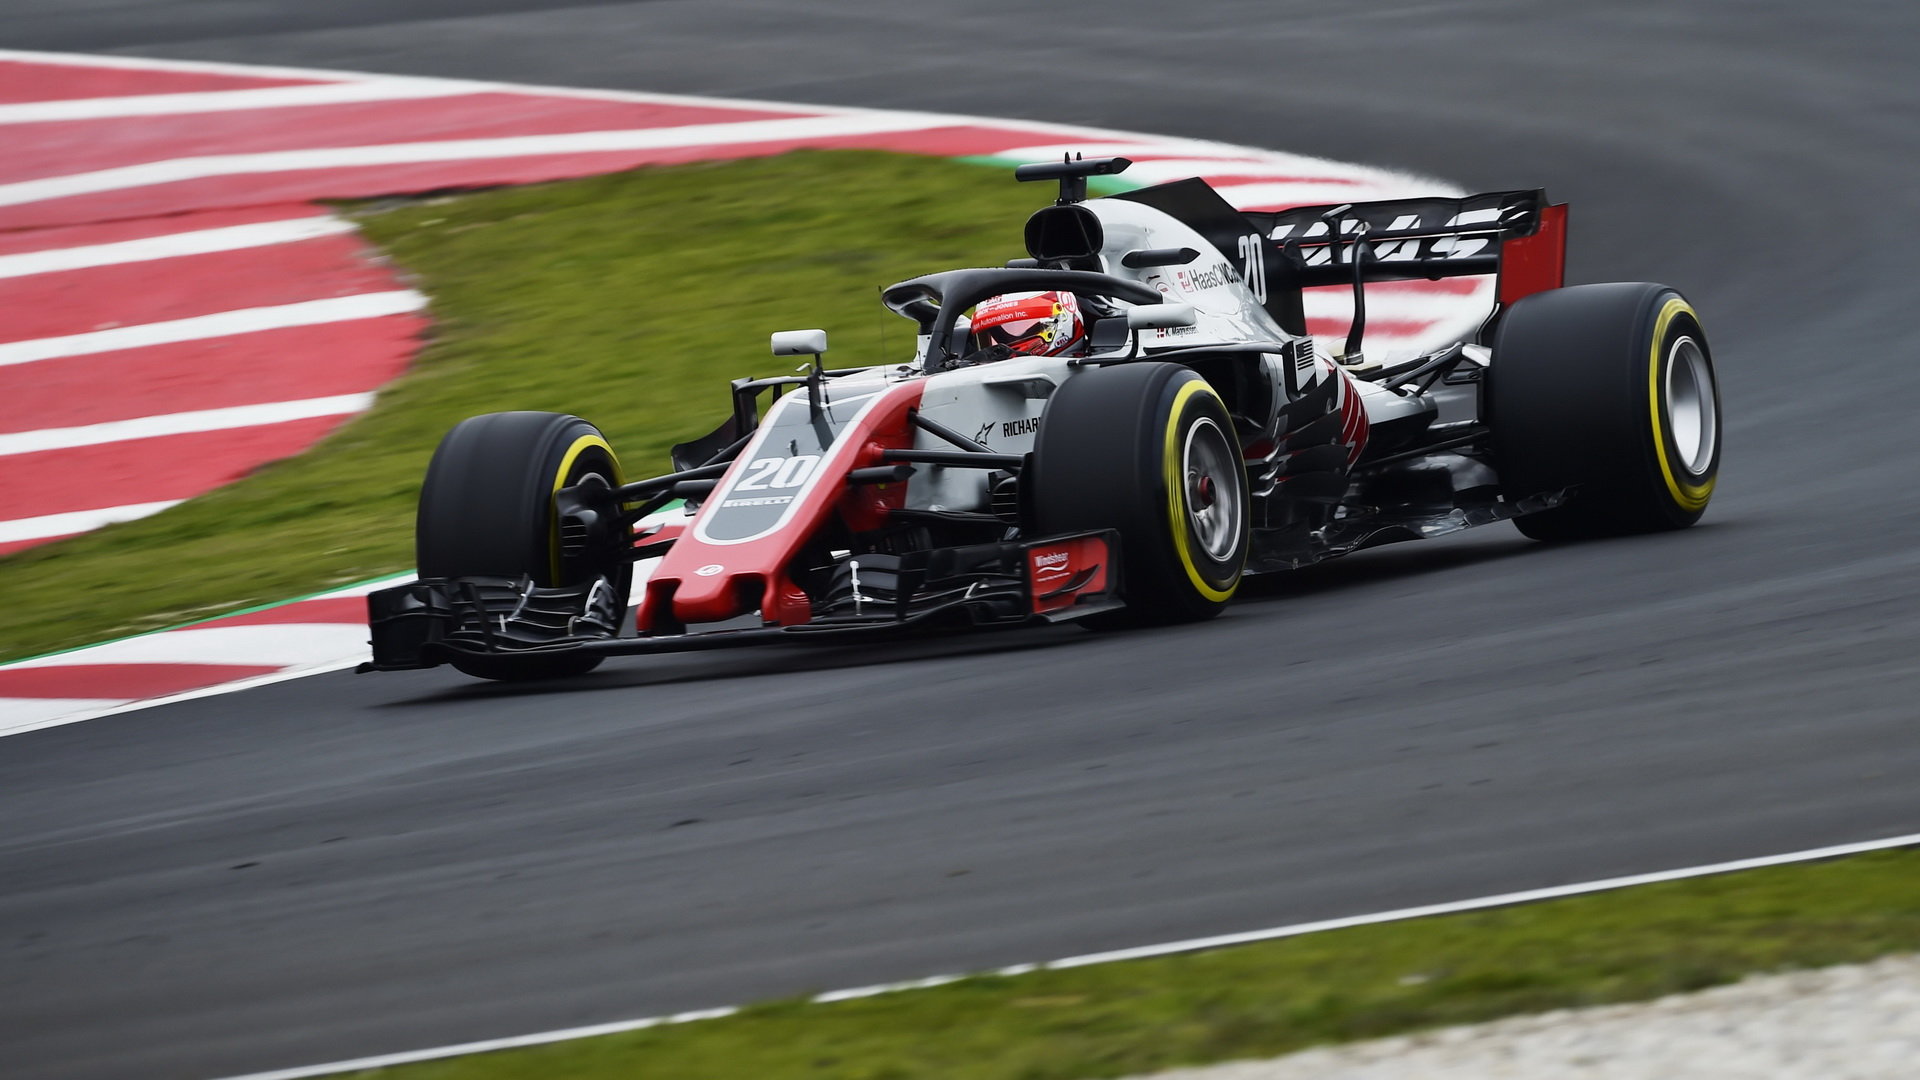 V Barceloně Haas svými výkony zaujal, stane se černým koněm sezóny a skončí na čtvrtém místě za trojicí nejsilnějších týmů?